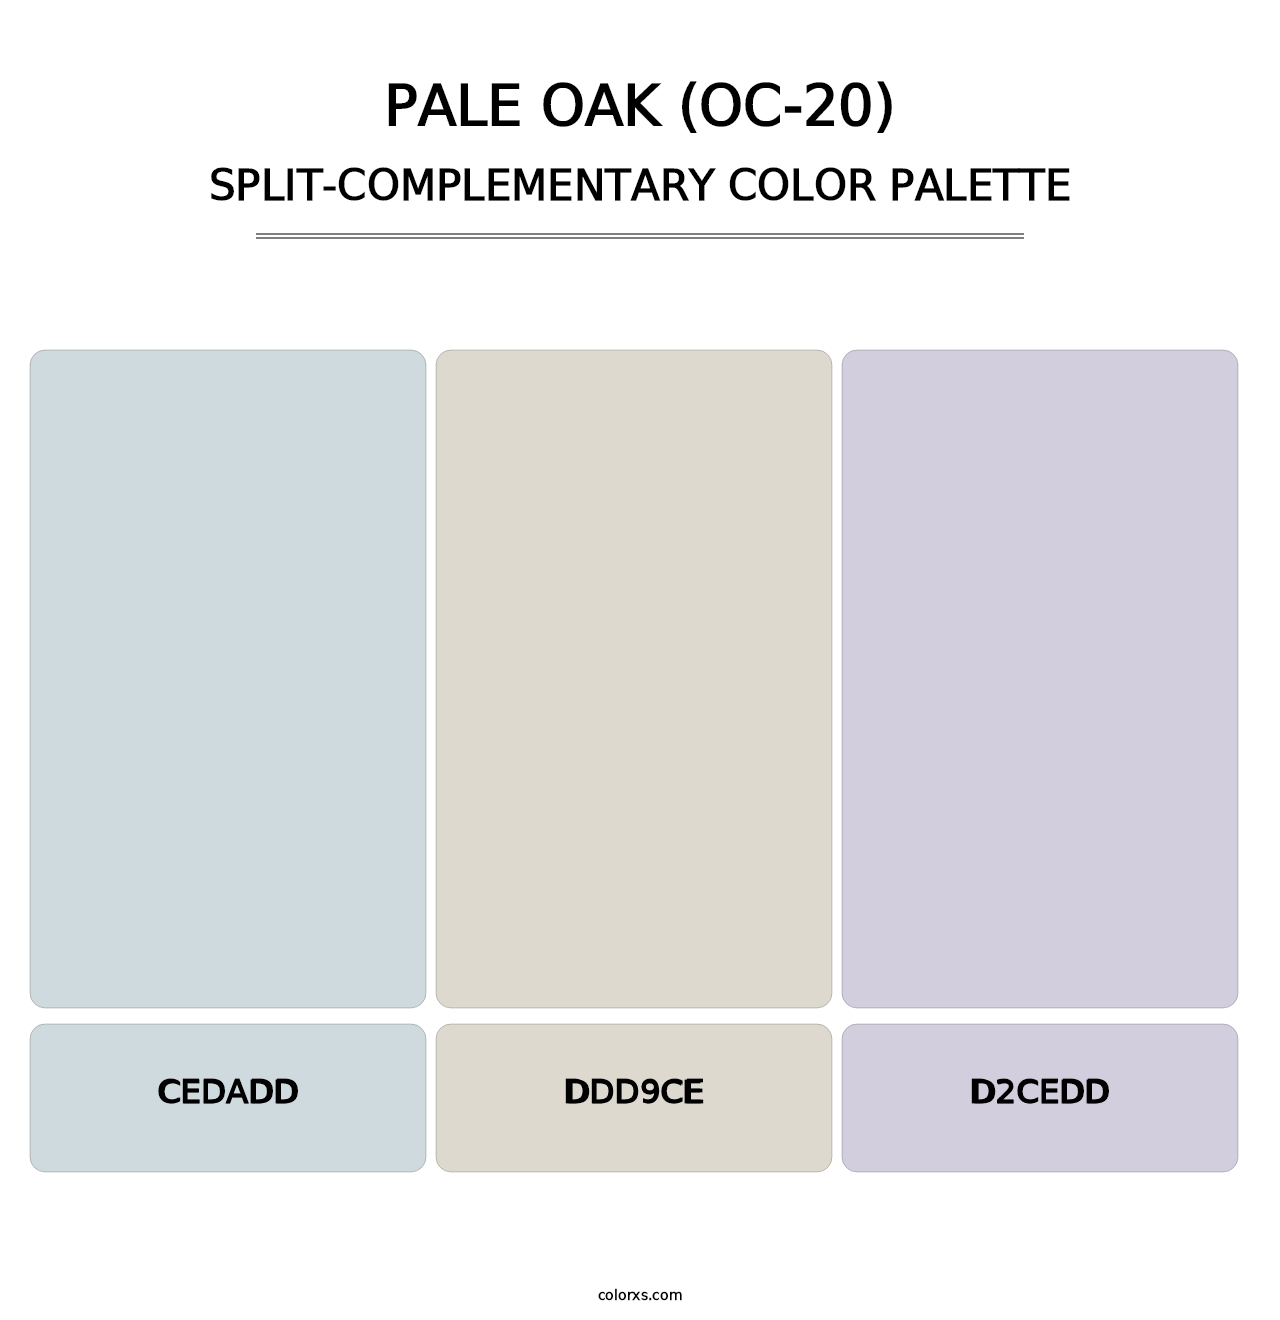 Pale Oak (OC-20) - Split-Complementary Color Palette